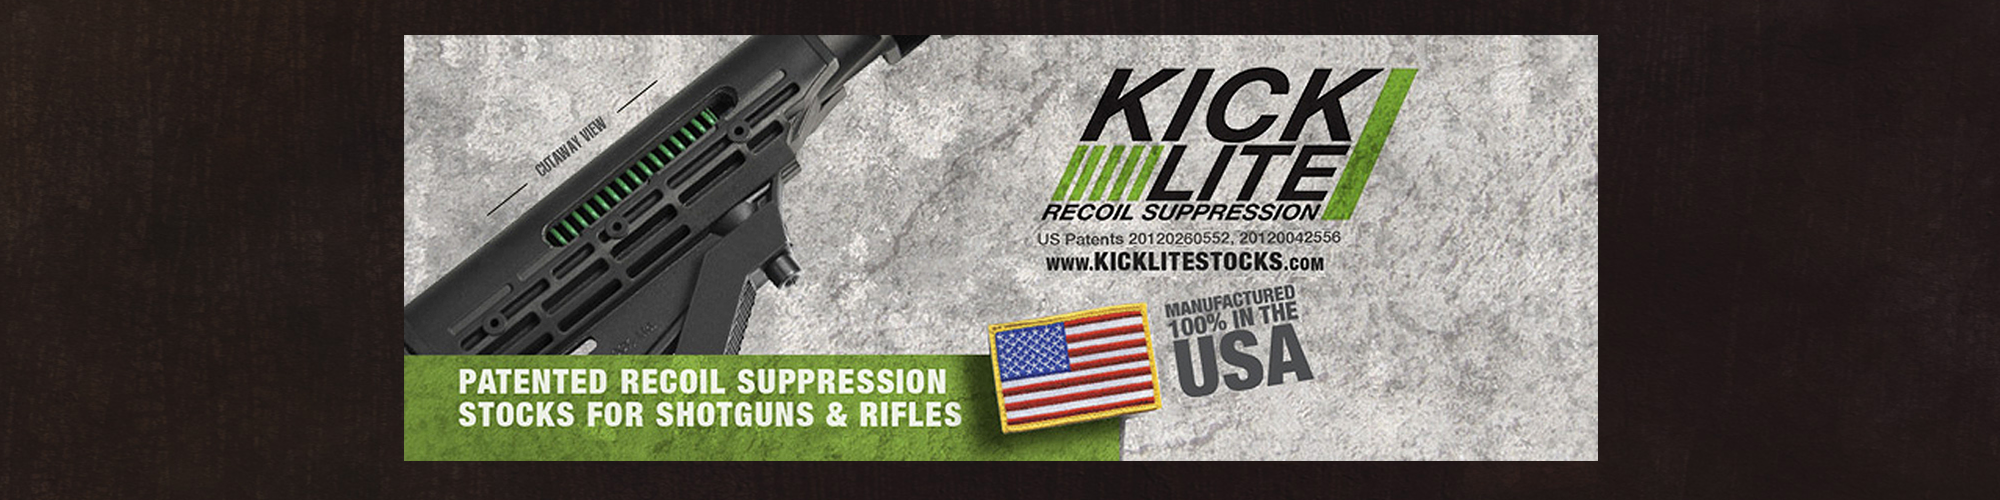 kicklite banner